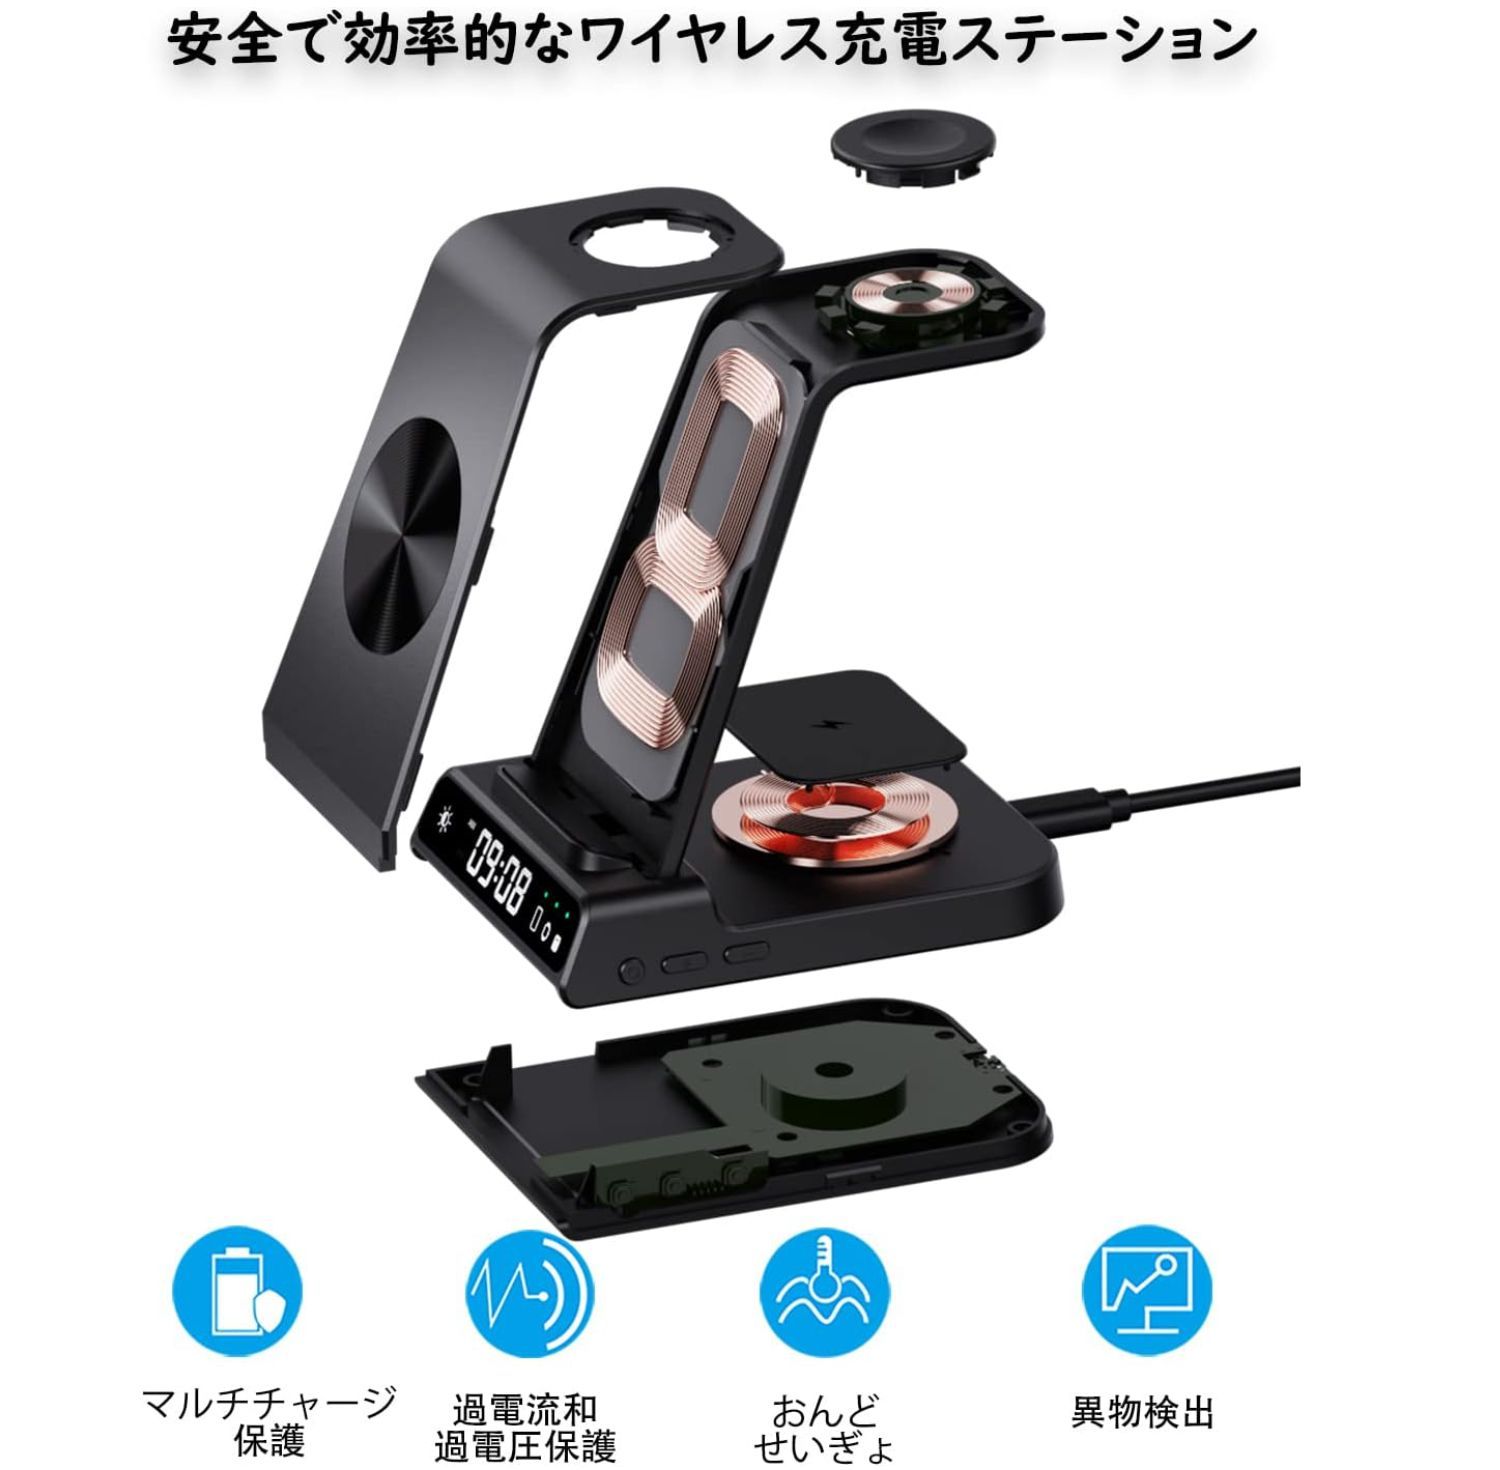 【色:黒い】doeboe 3 in 1 ワイヤレス充電器、for Samsung